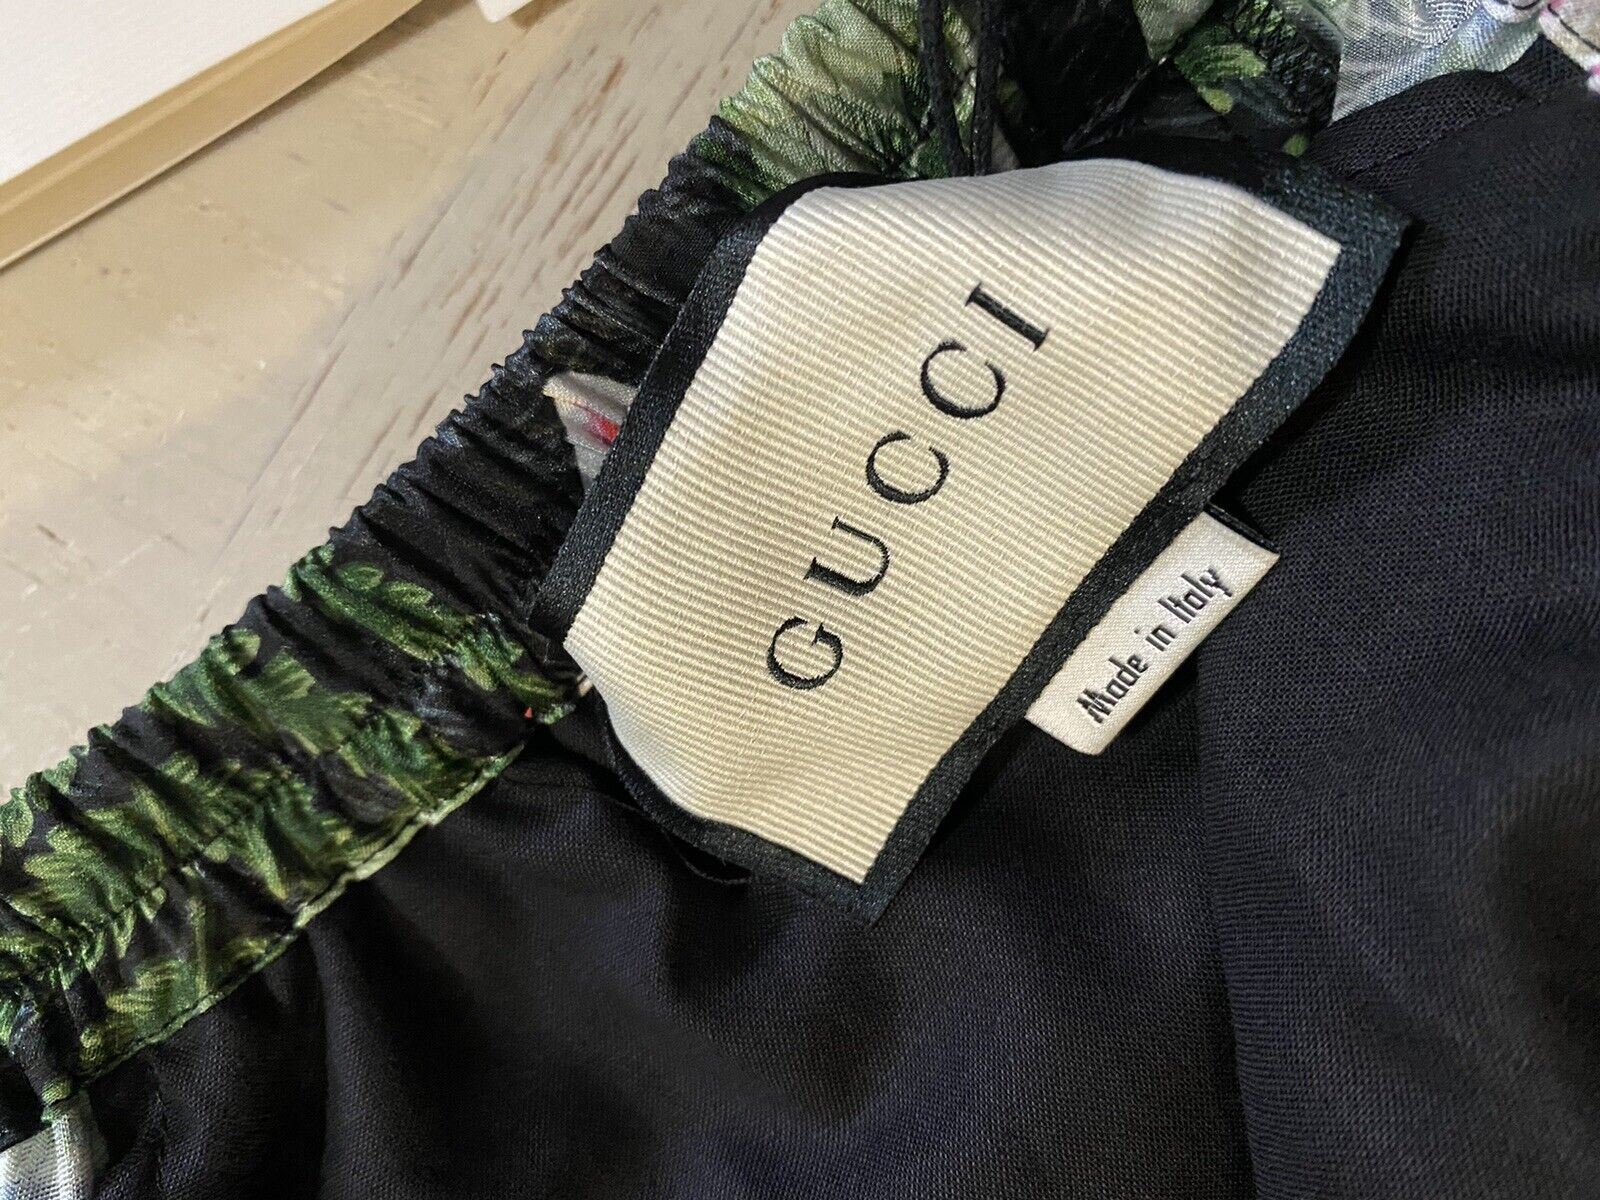 NWT $980 Gucci Men’s Gucci Soul Monogram Short Pents Black/Green/Mul. 34 US/50 E